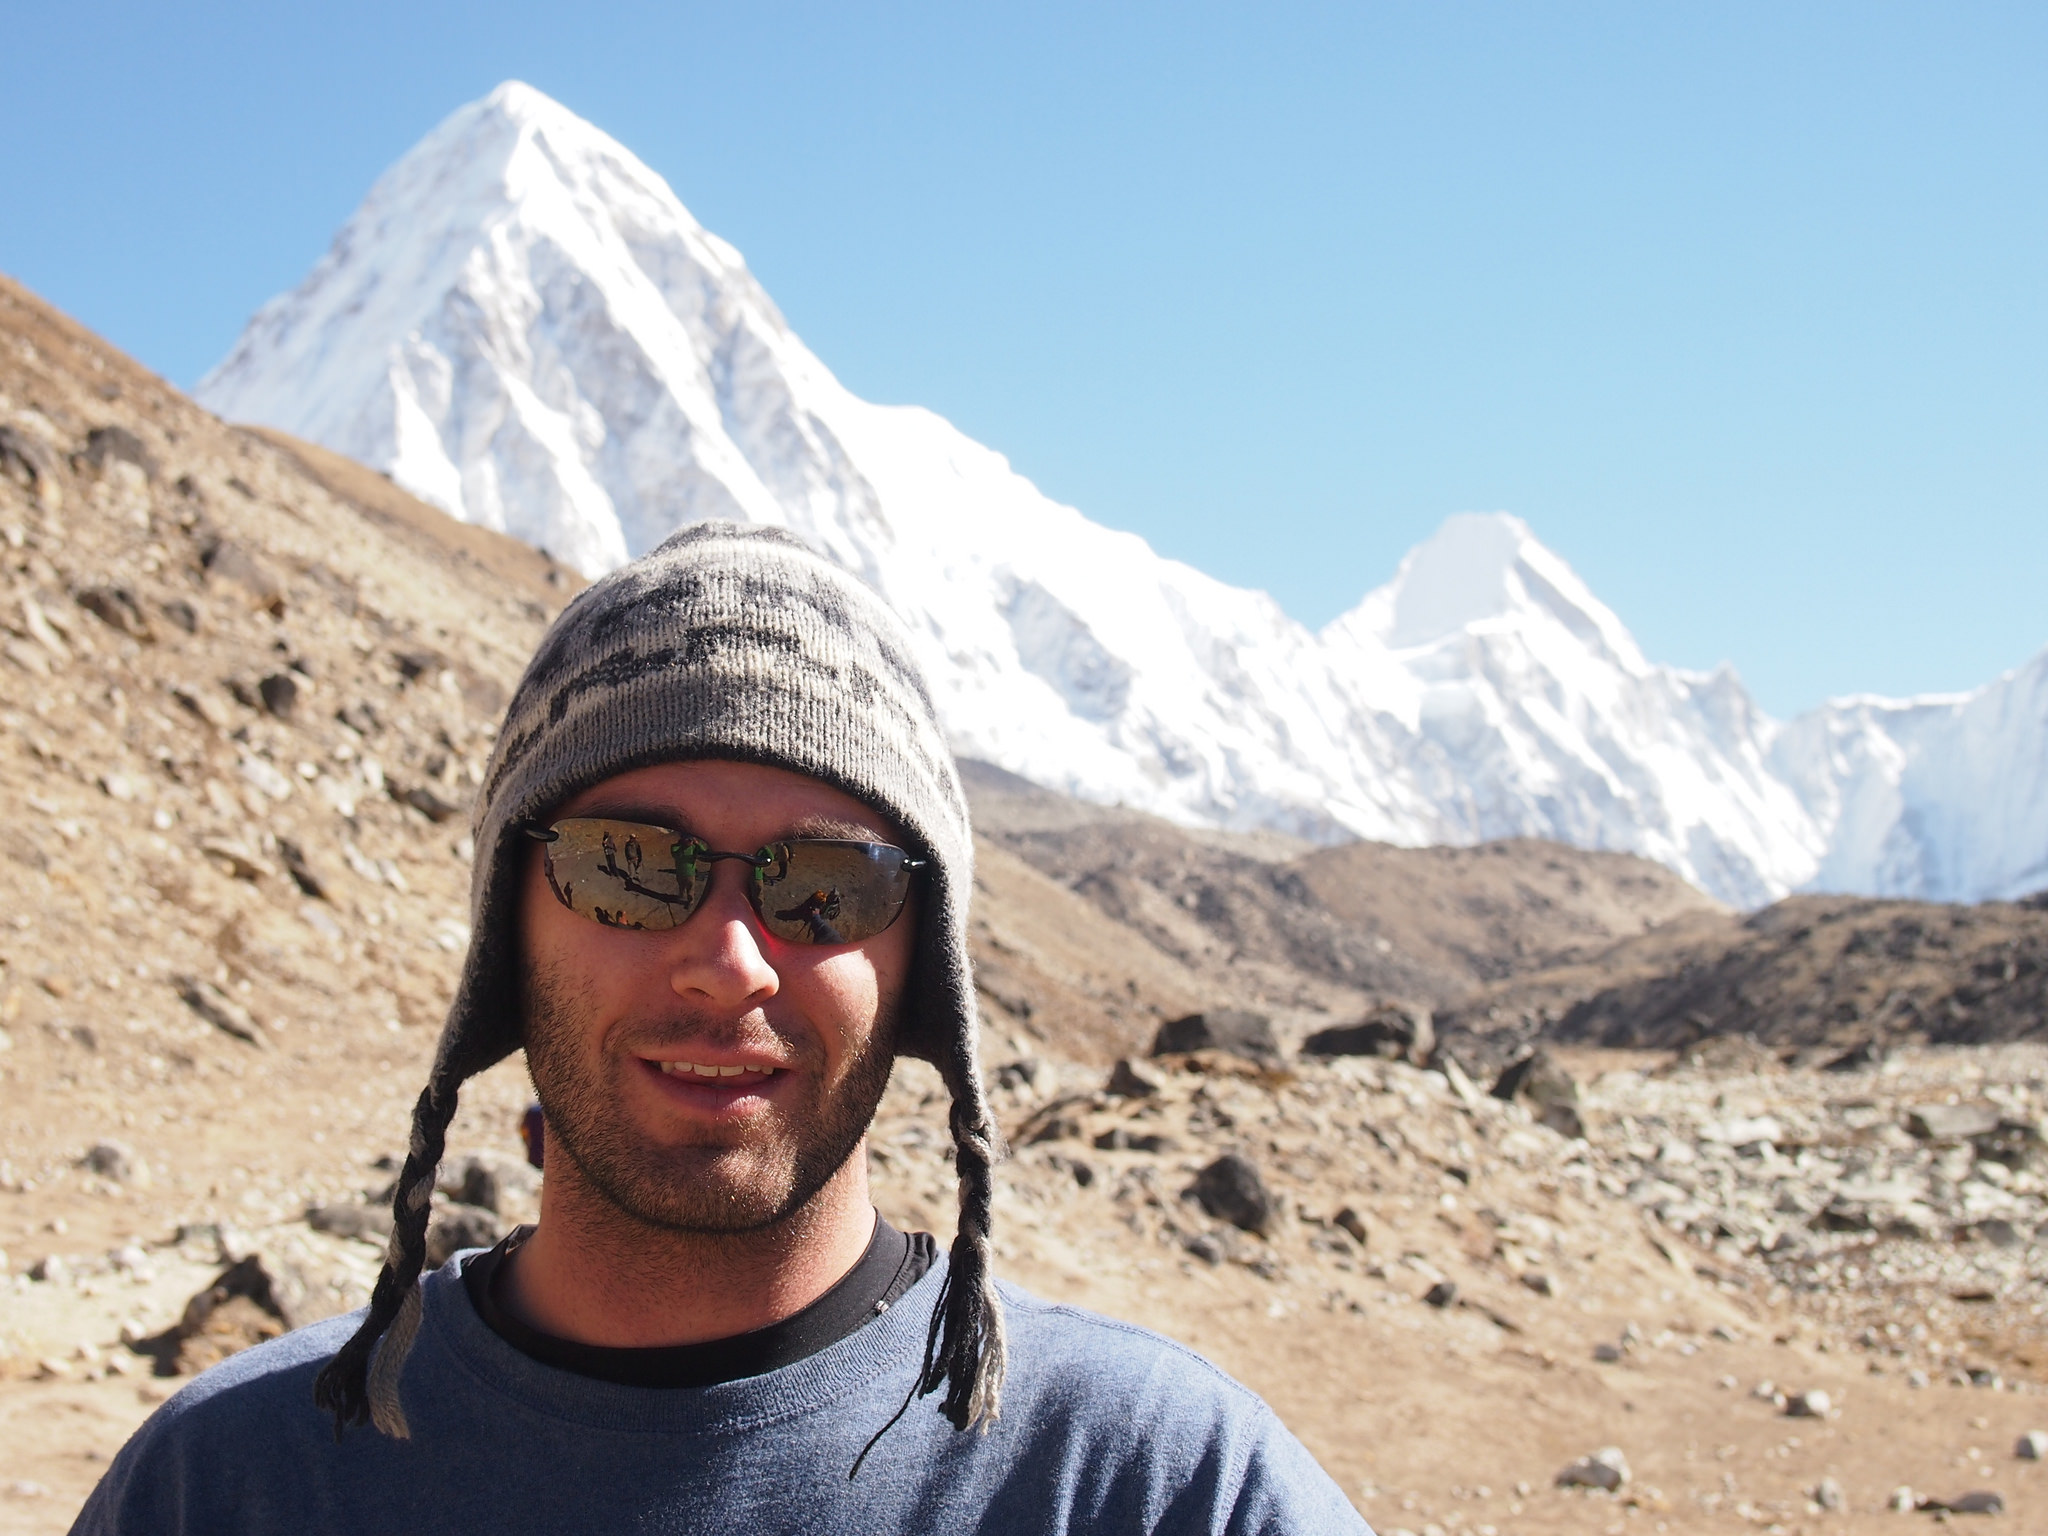 Dan on the Everest Base Camp trek